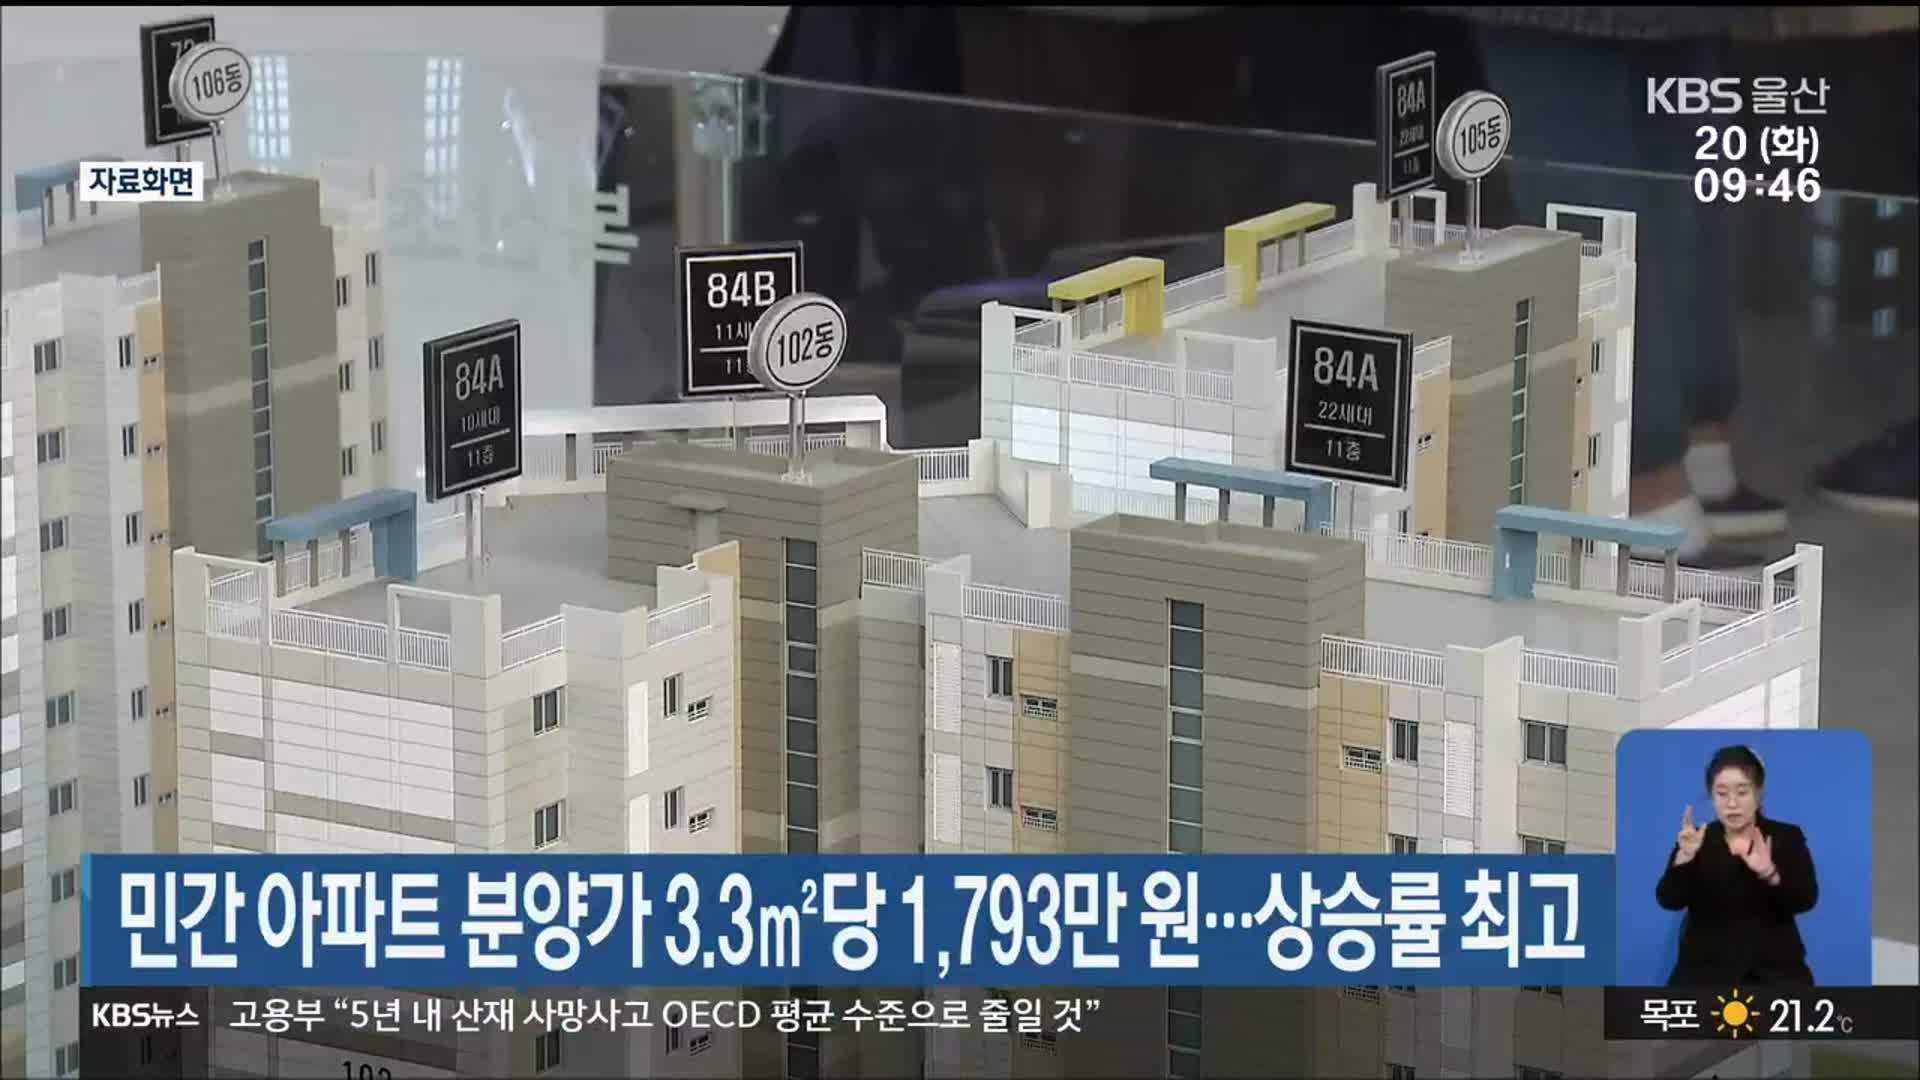 울산 민간 아파트 분양가 3.3㎡당 1,793만 원…상승률 최고